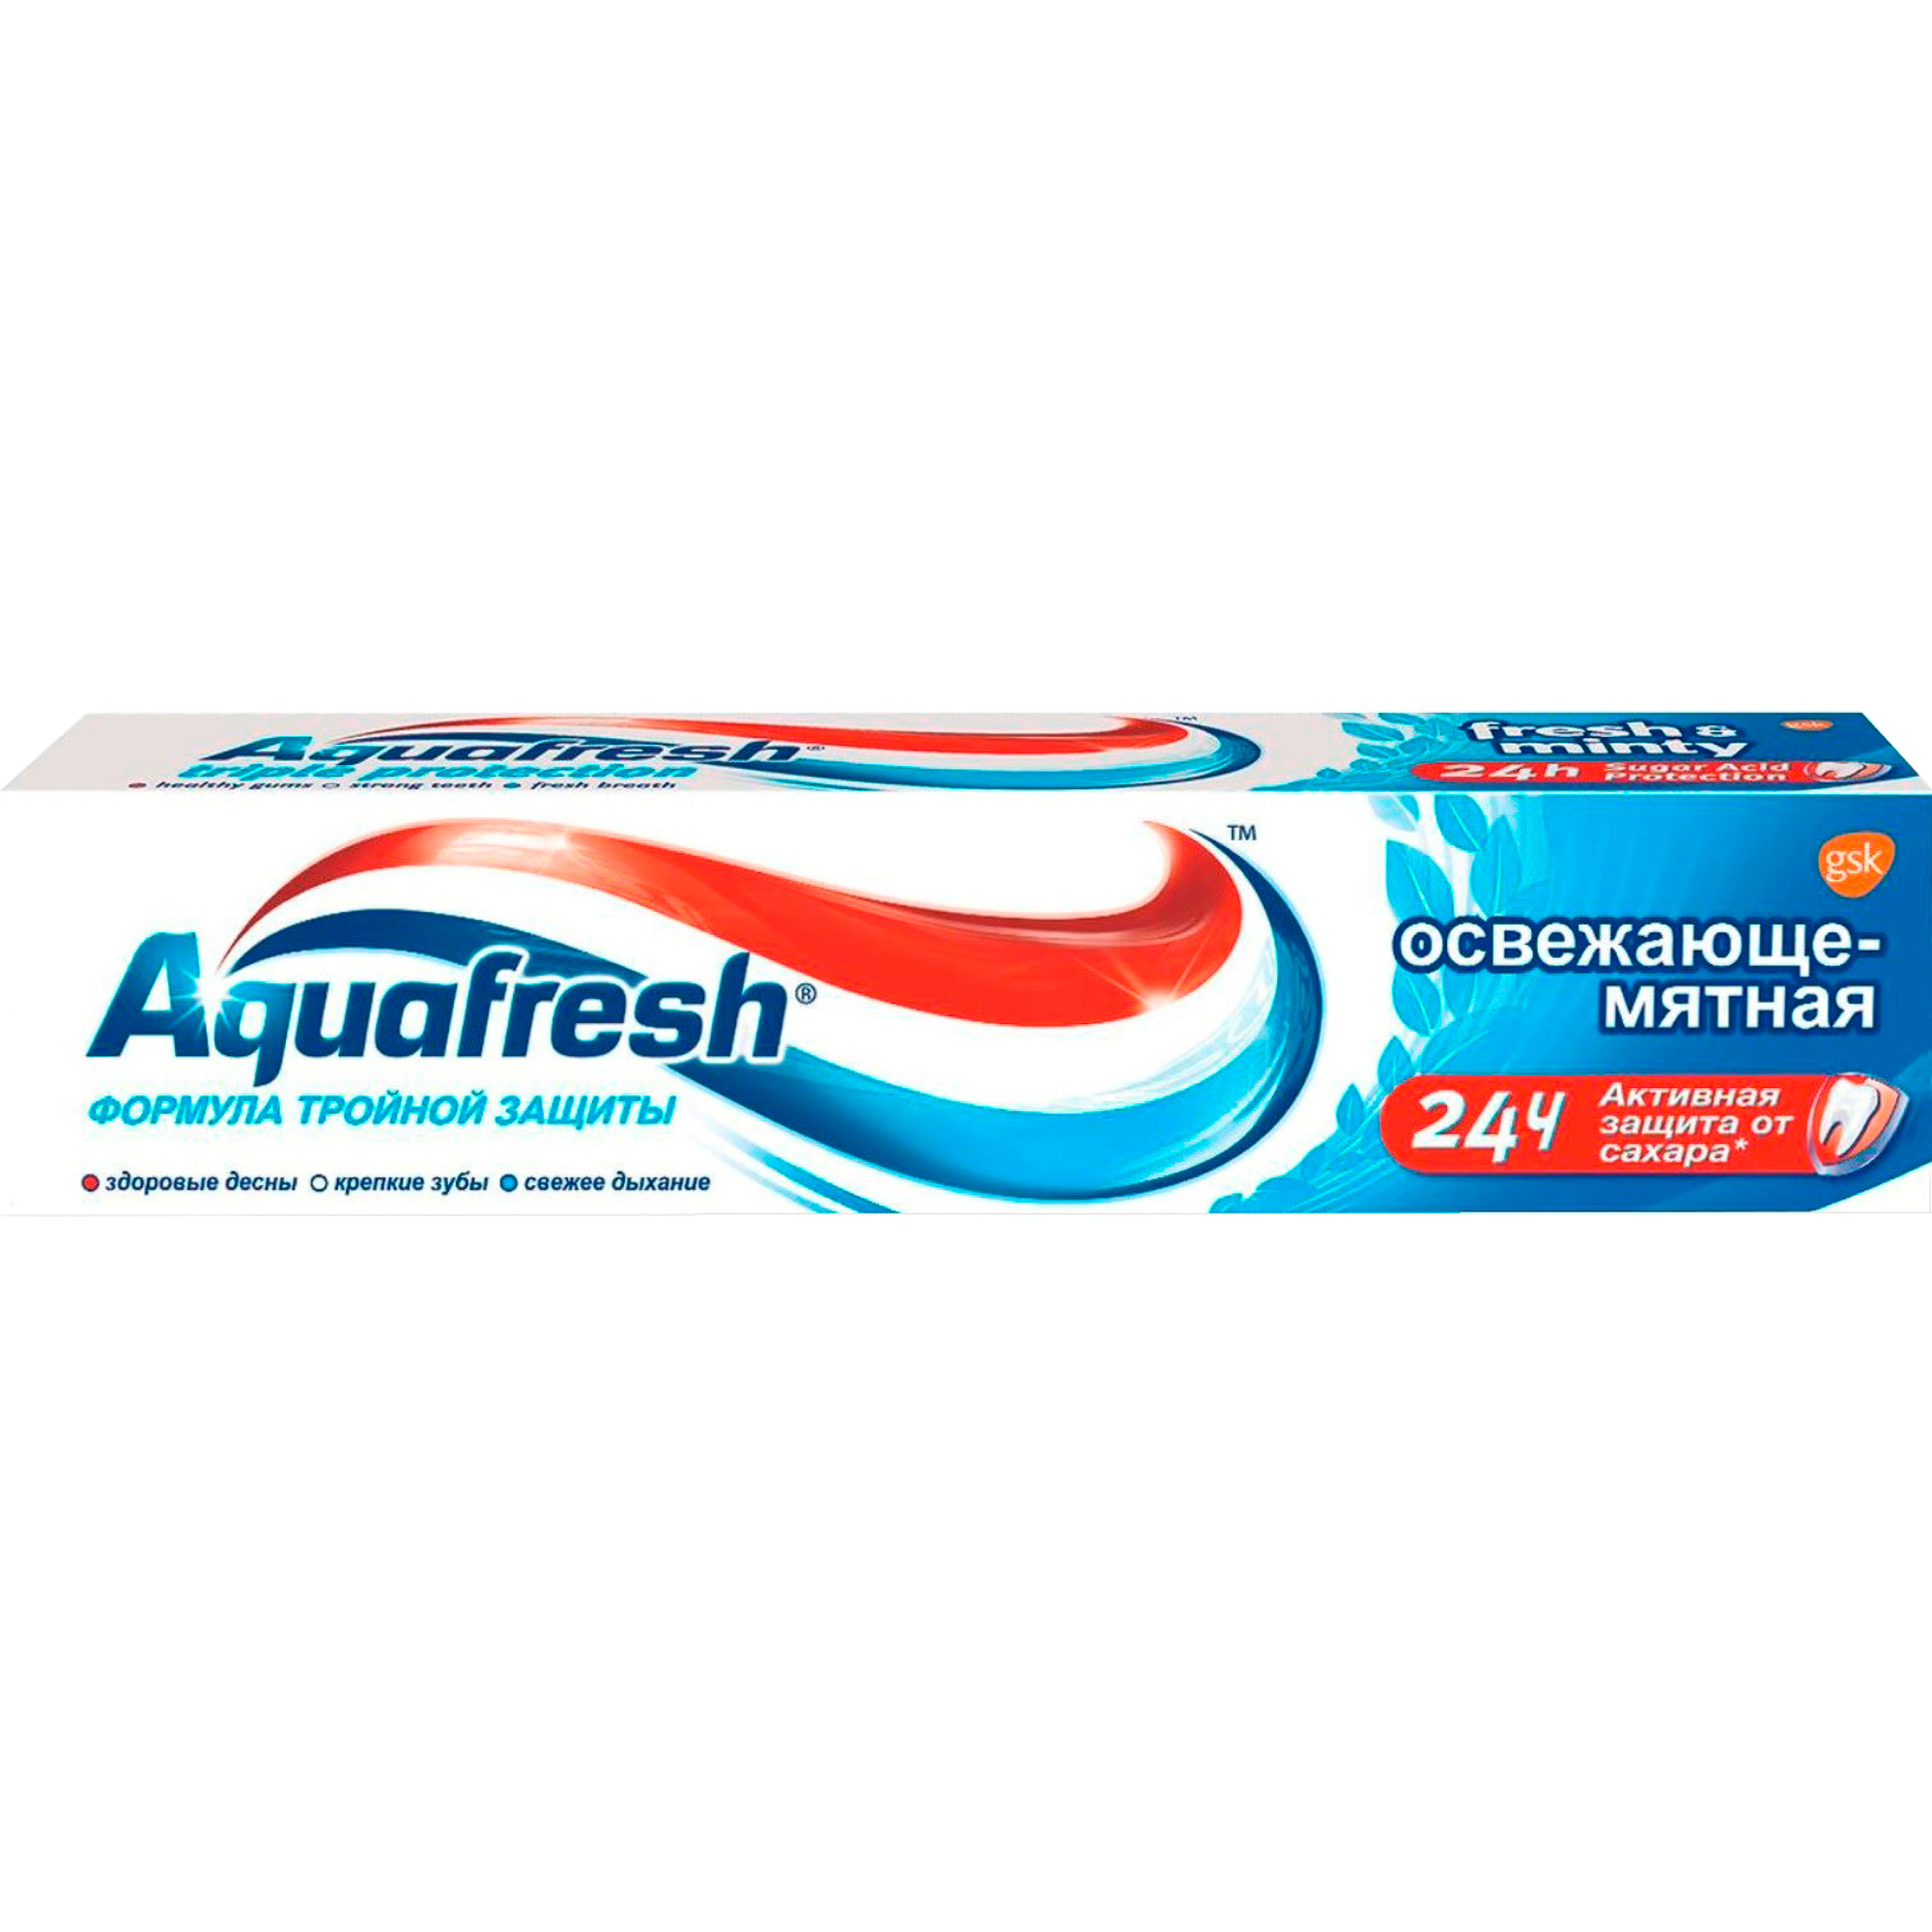 Зубная паста Aquafresh Освежающе-мятная 100 мл aquafresh зубная паста освежающе мятная